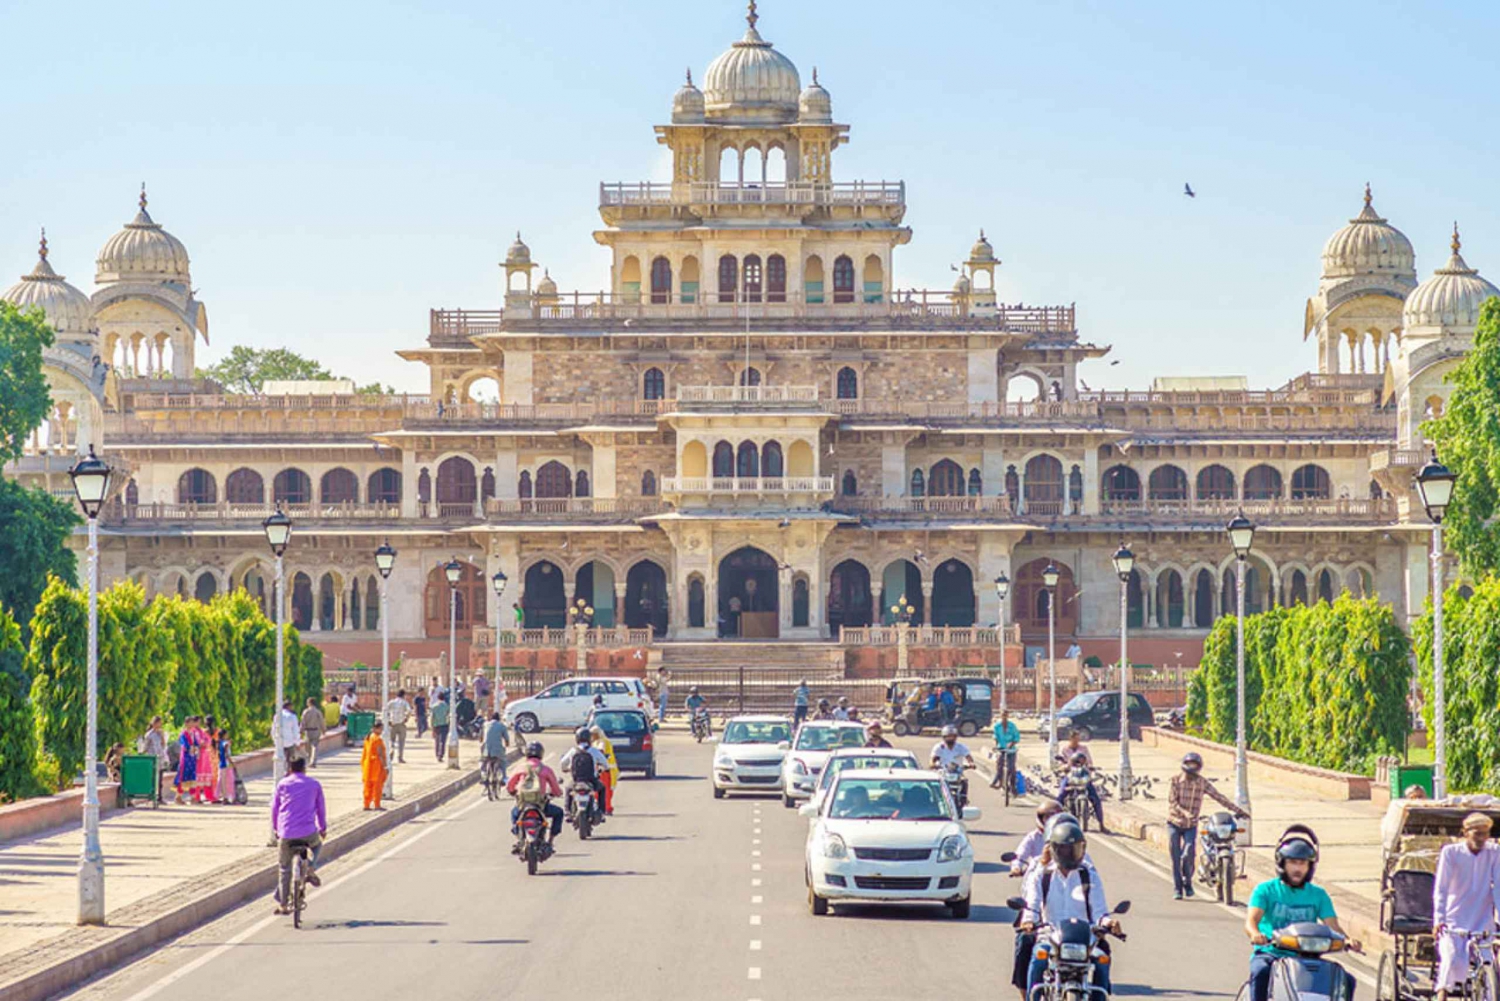 Agra à Jaipur cab via Fatehpur Sikri & abhaneri stepwell